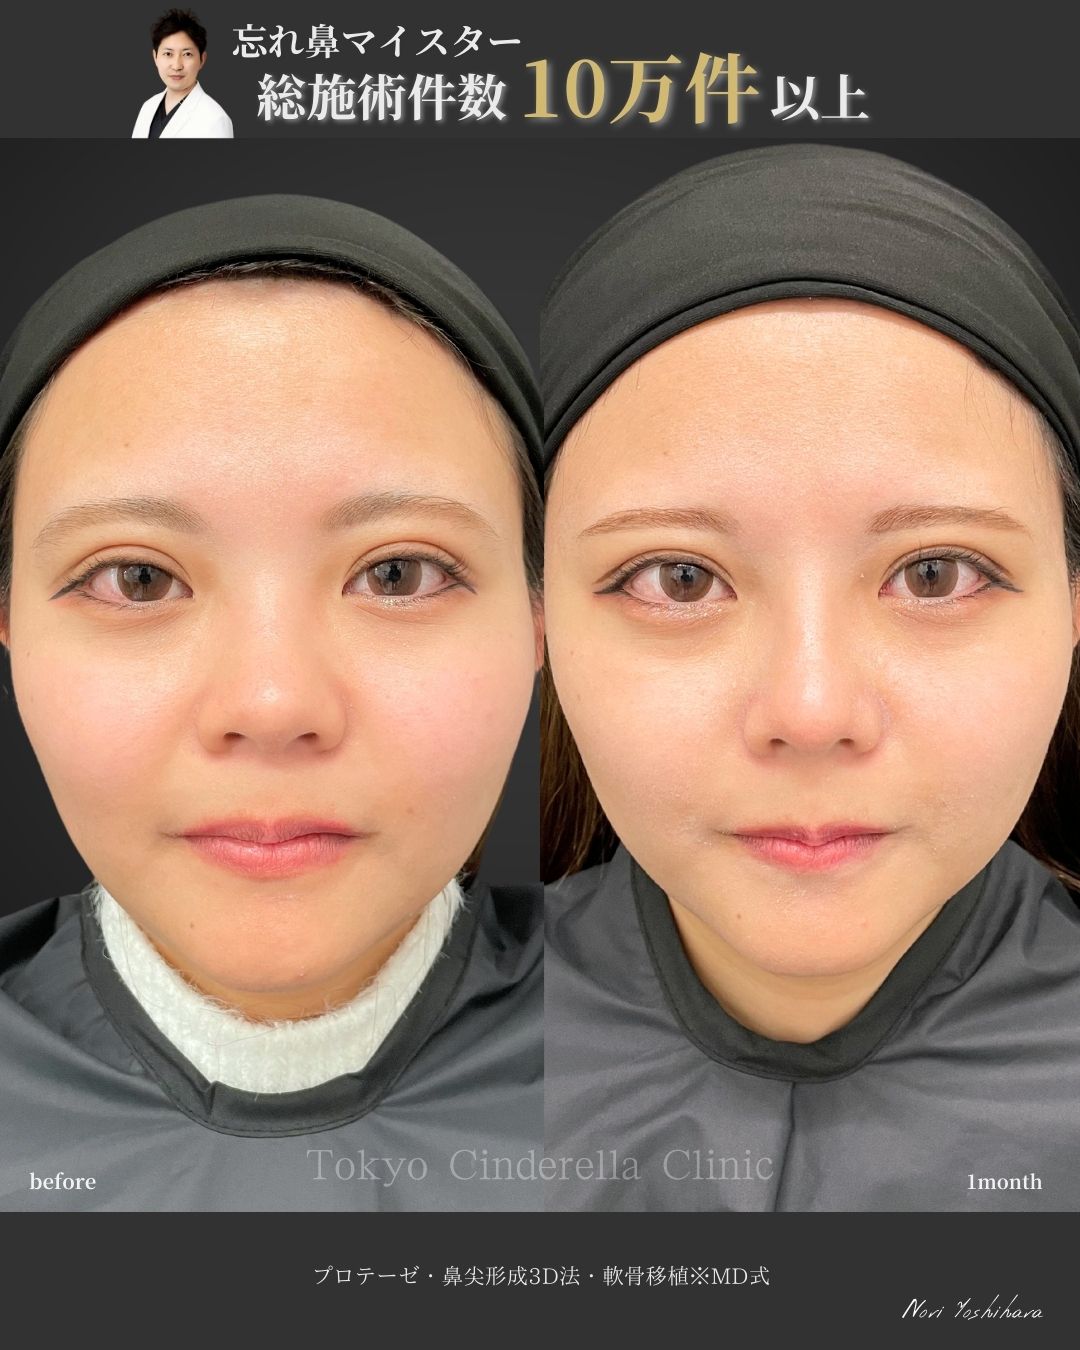 プロテーゼと鼻尖形成3D法と軟骨移植をMD式で受けた女性の症例